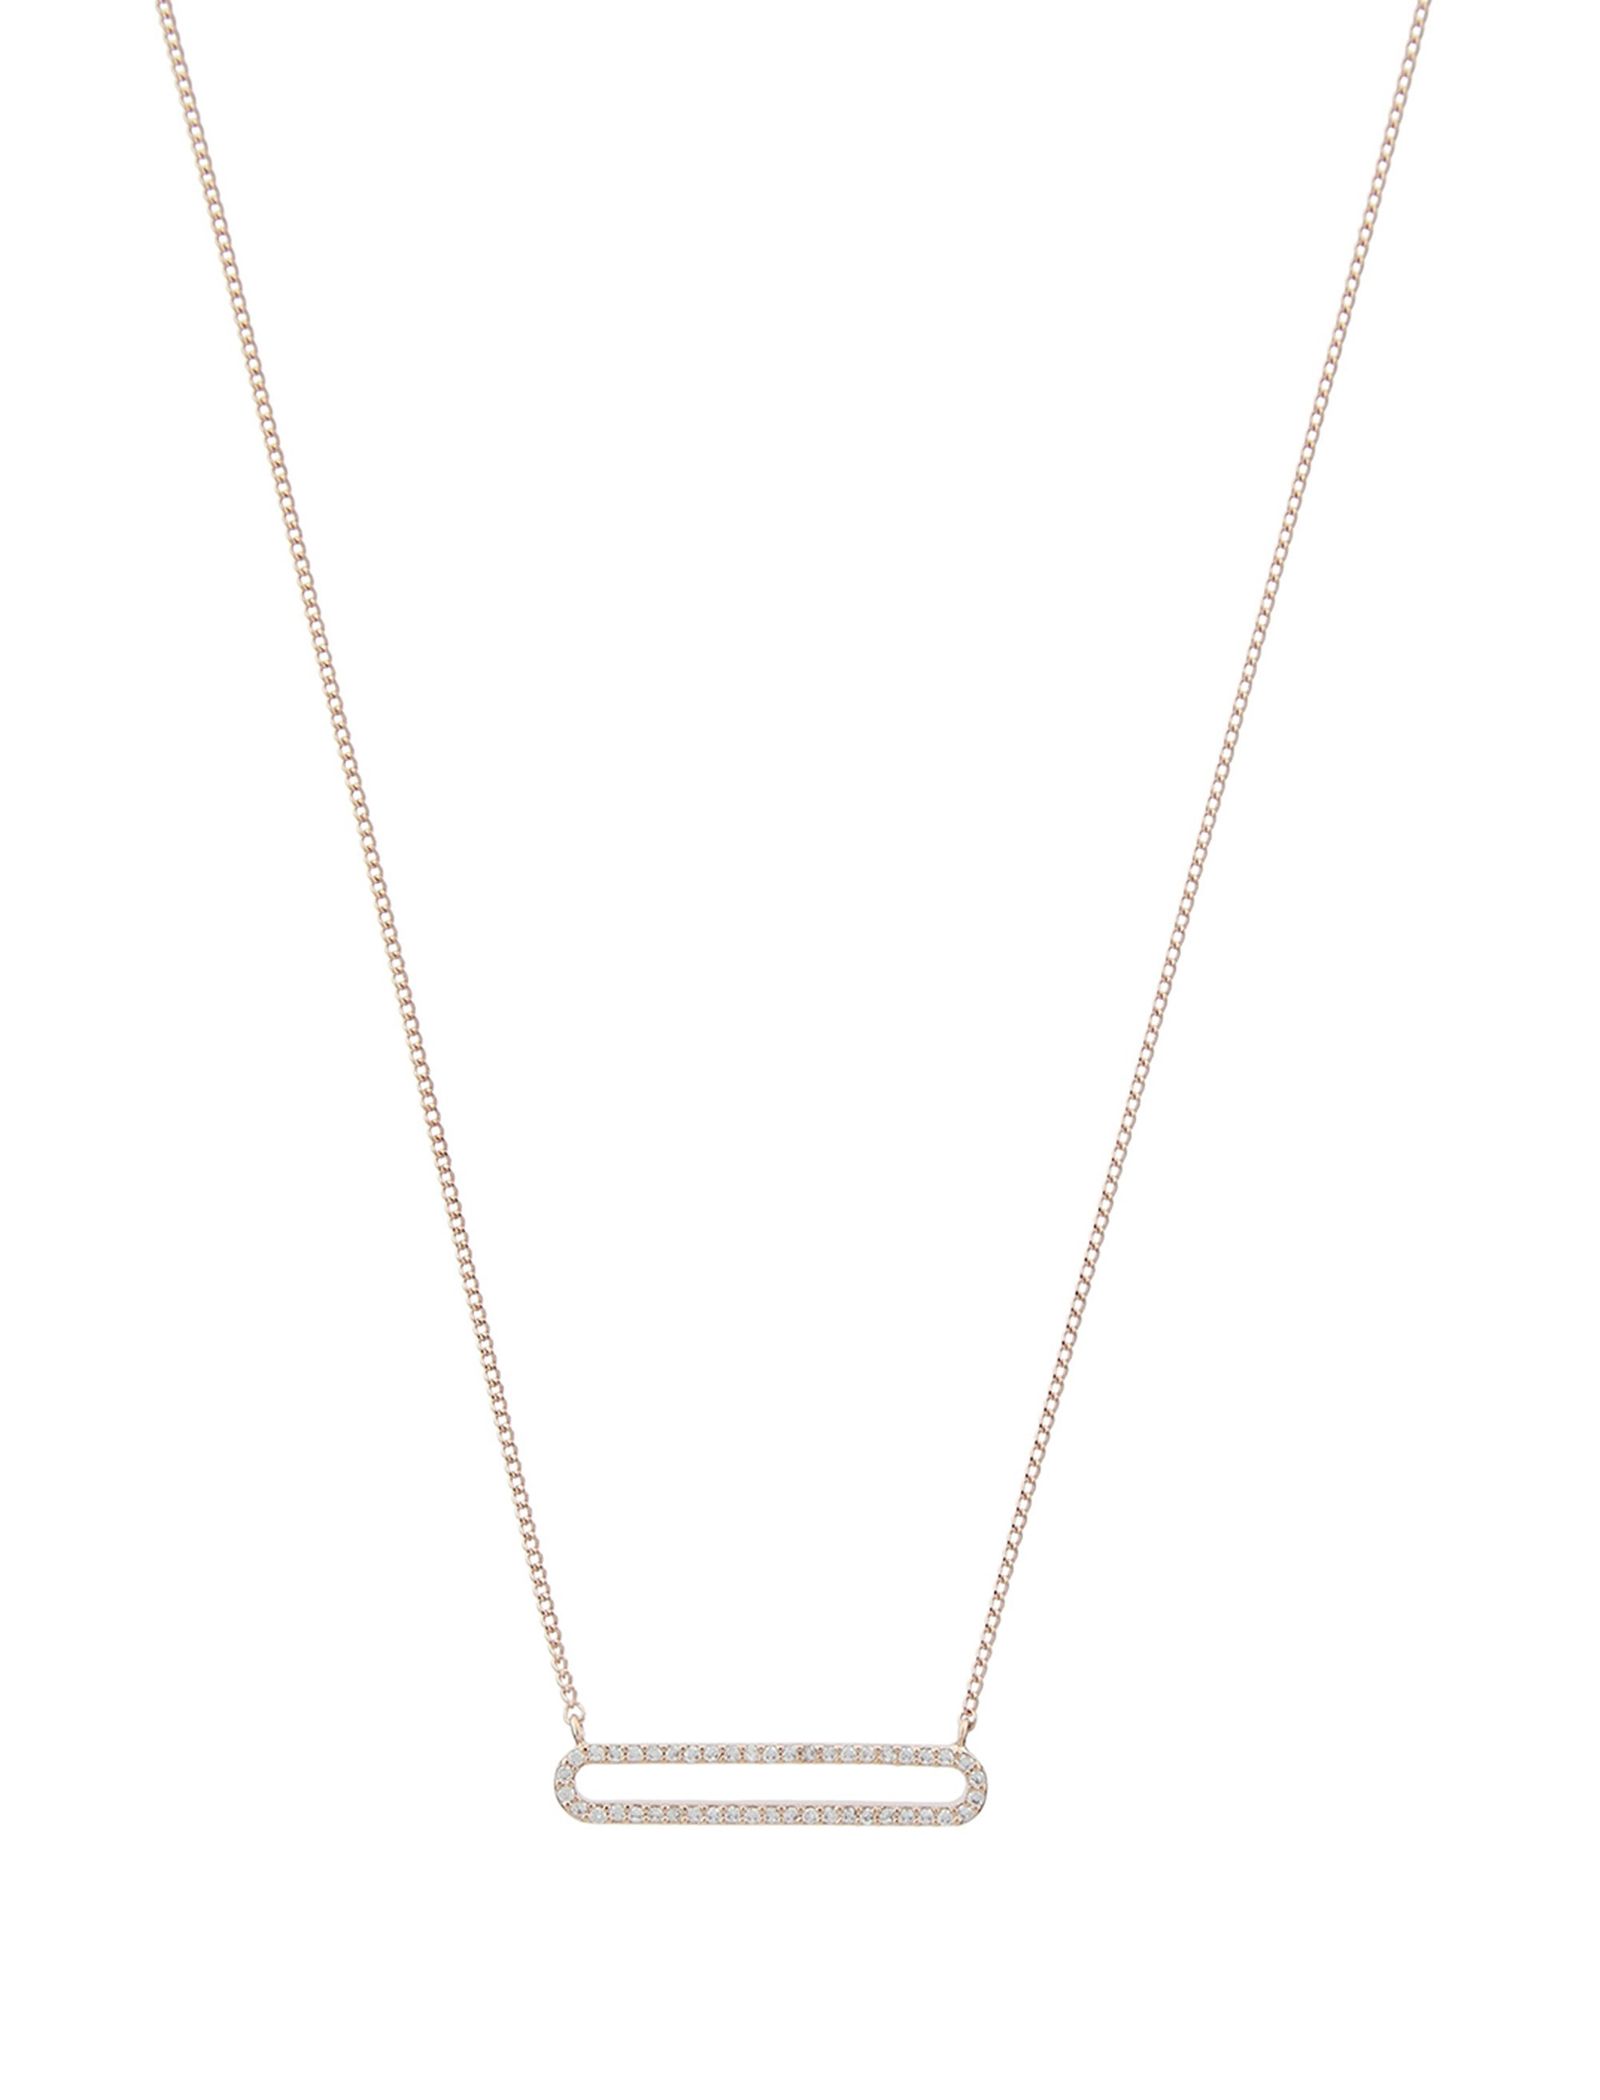 گردنبند برنجی آویز زنانه Diamante Oval - اکسسورایز تک سایز - طلايي - 3